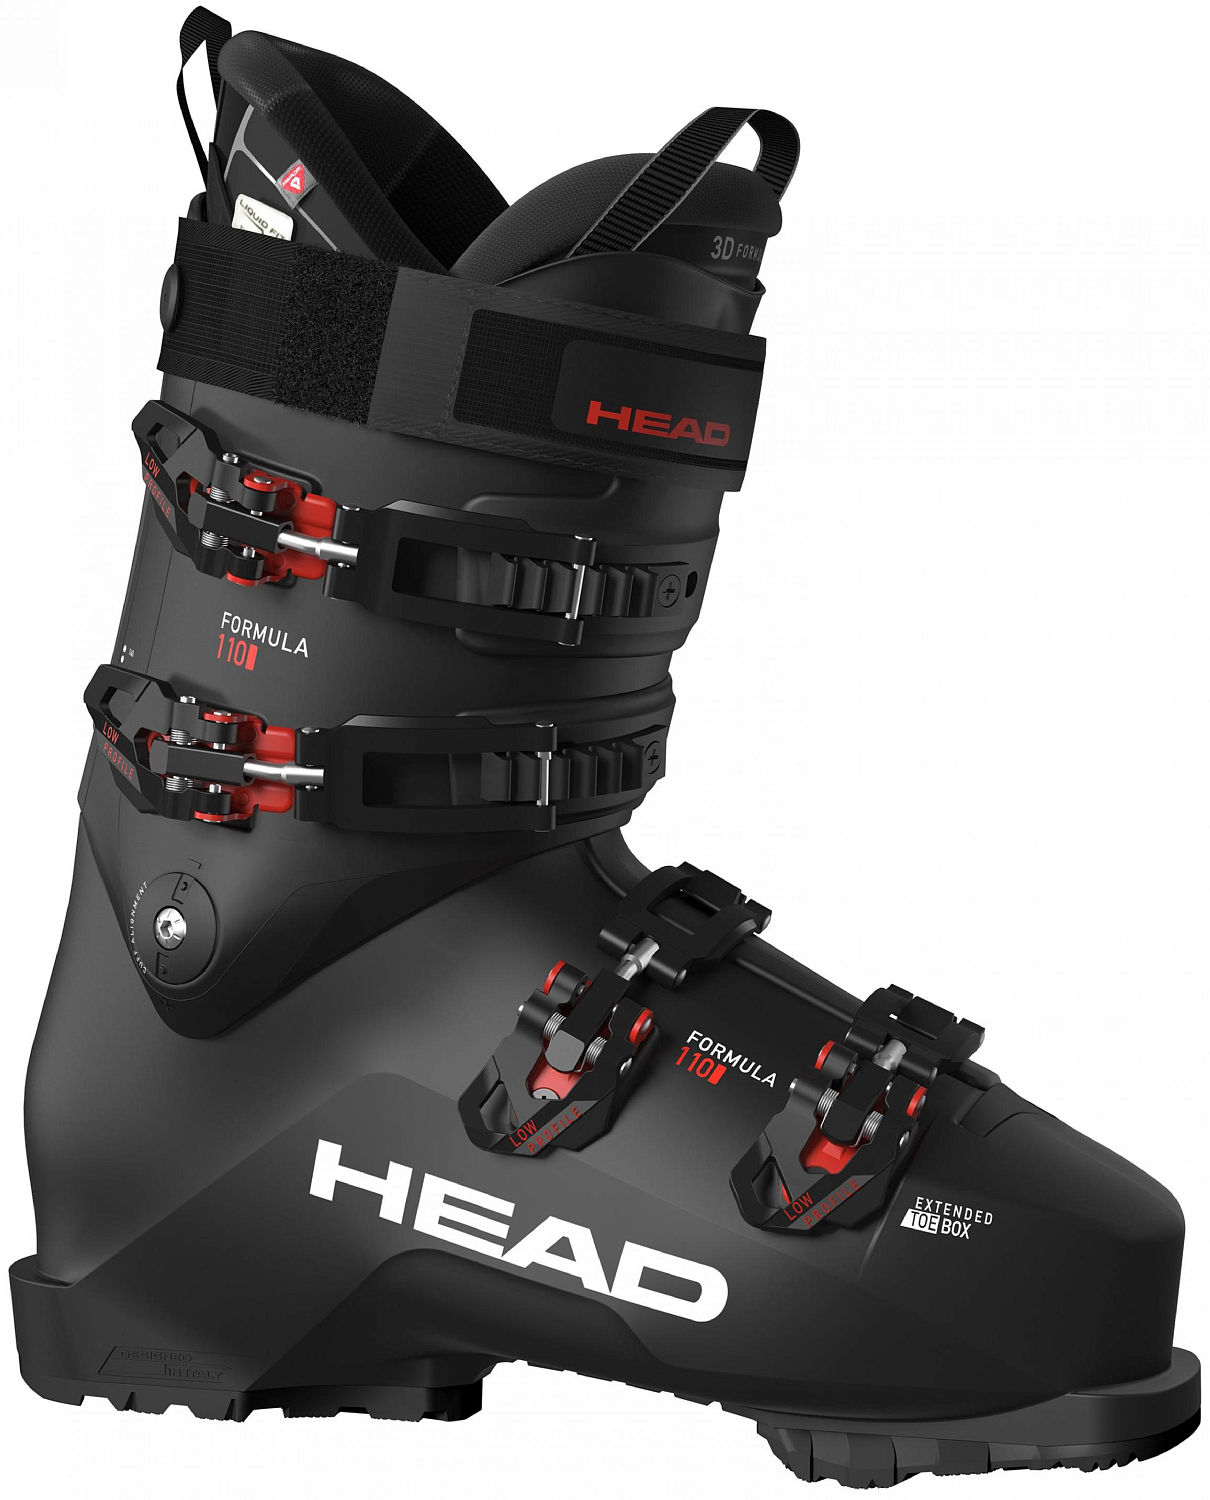 Горнолыжные ботинки Head Formula 110 Gw 2022 black/red, 28,5 см